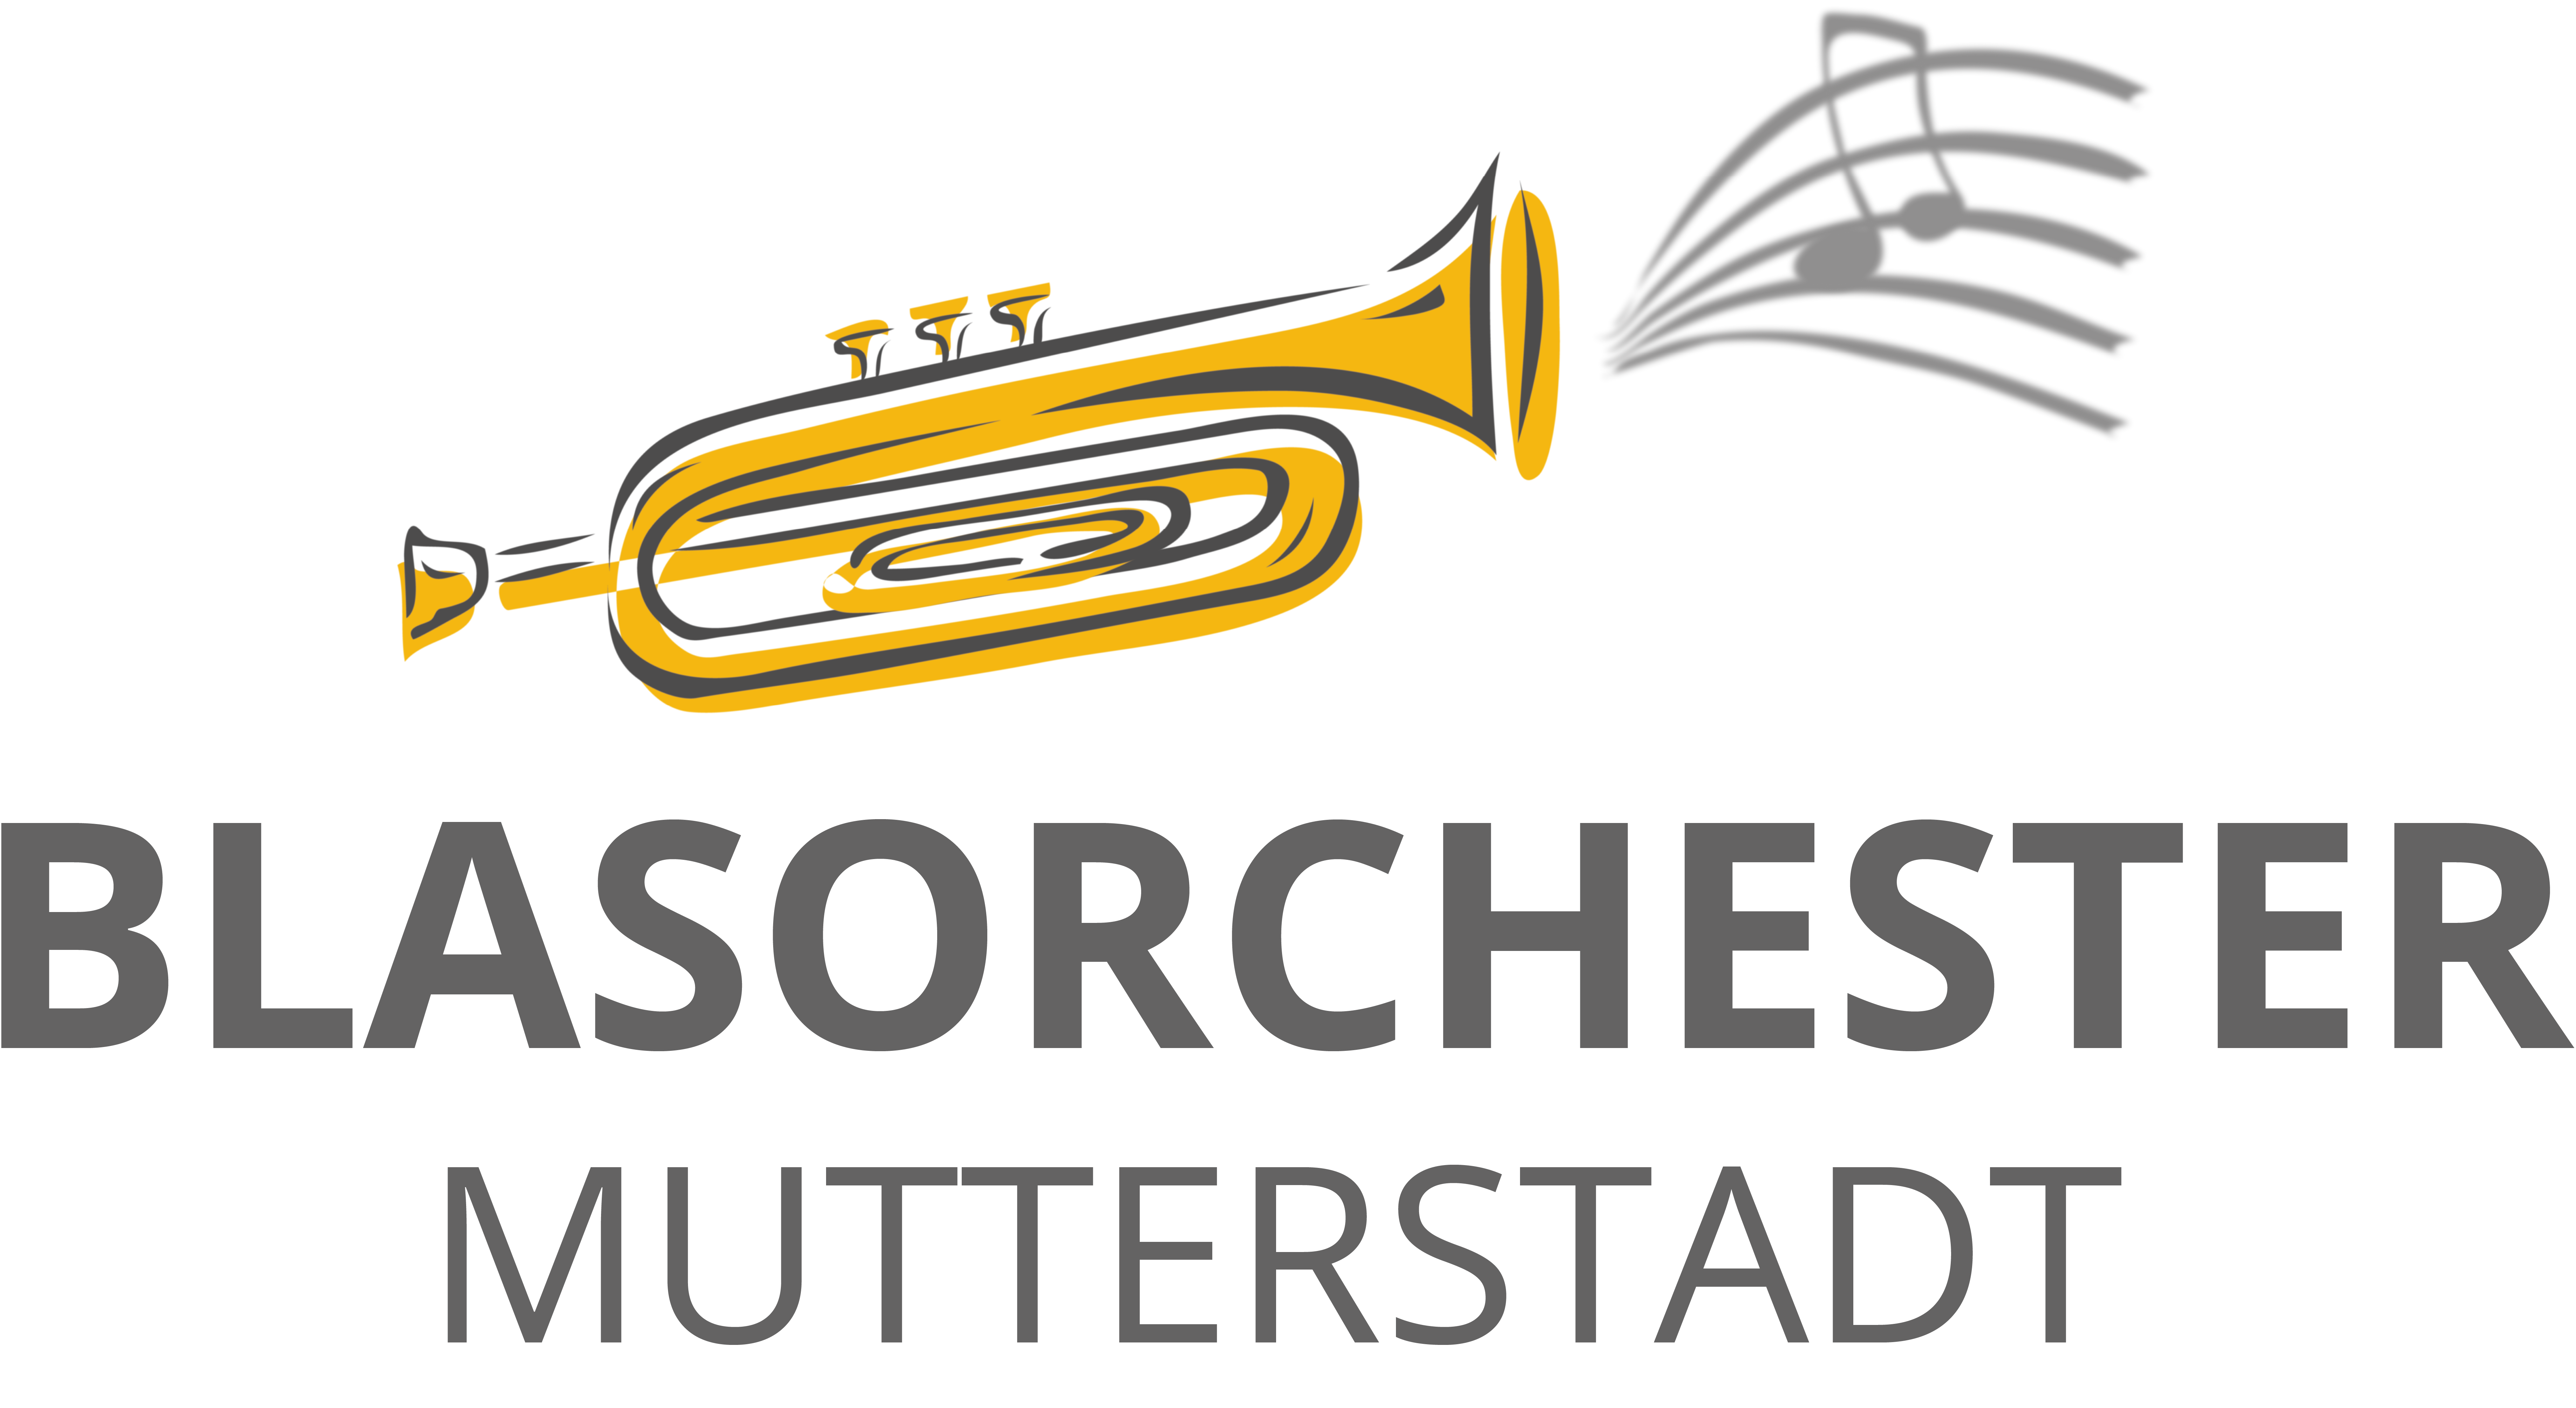 Blasorchester Mutterstadt